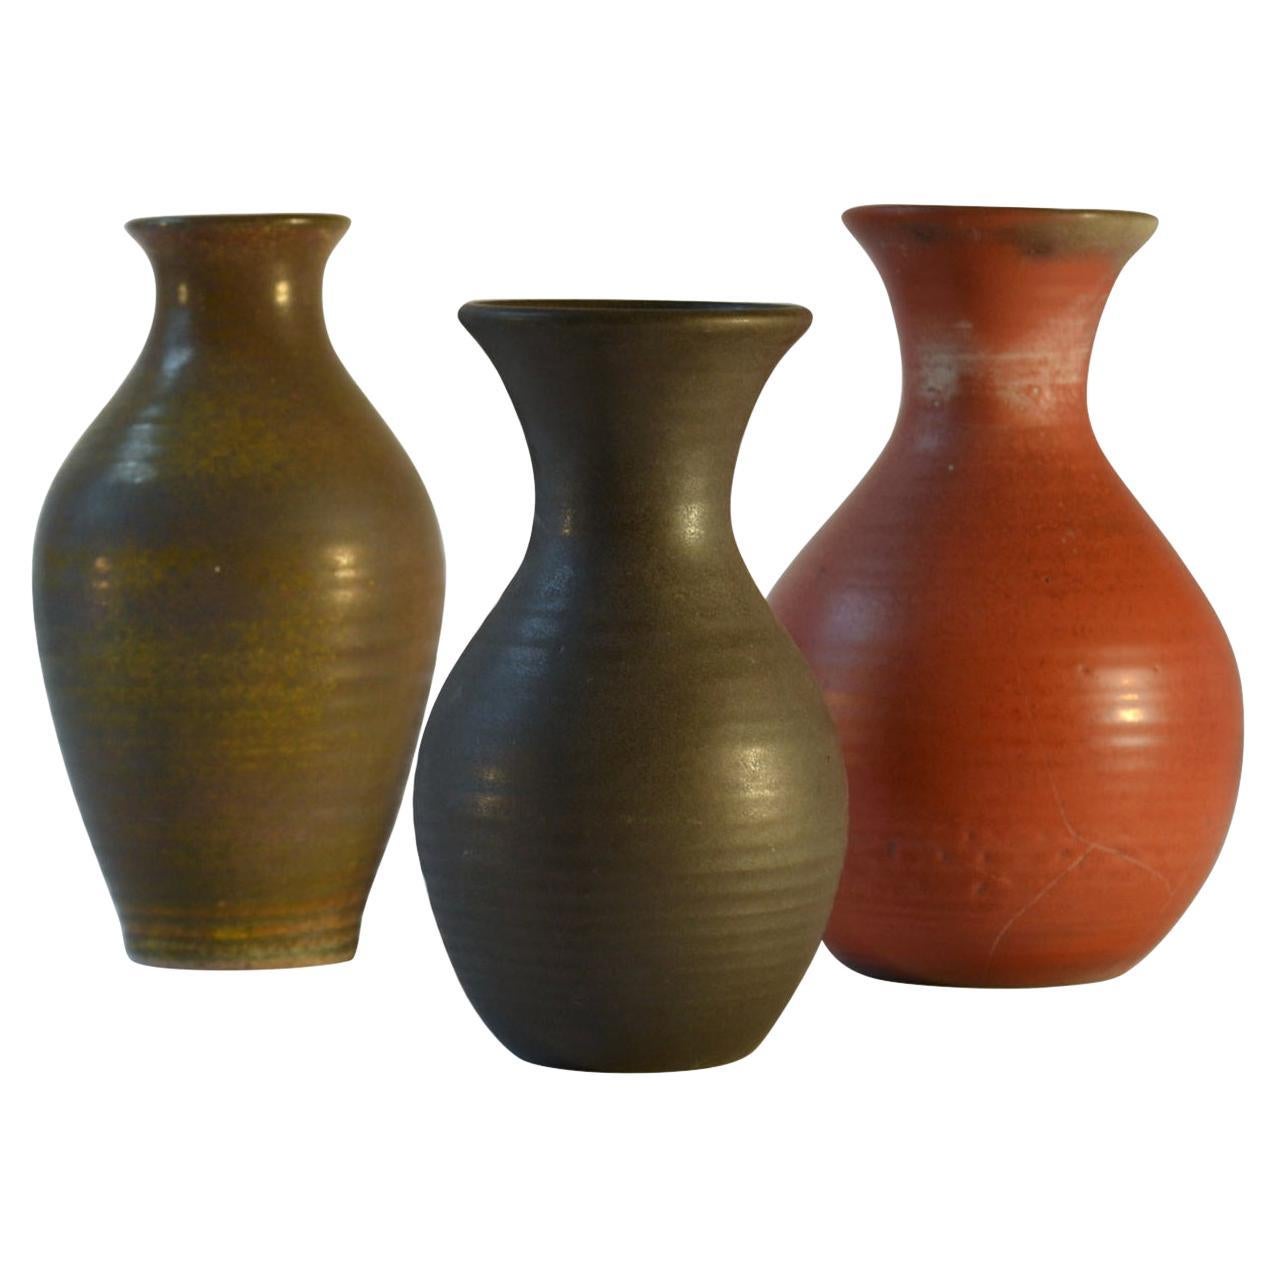 Group of Three Mid Century Ceramic Dutch Studio Vases in Earth Tones For Sale